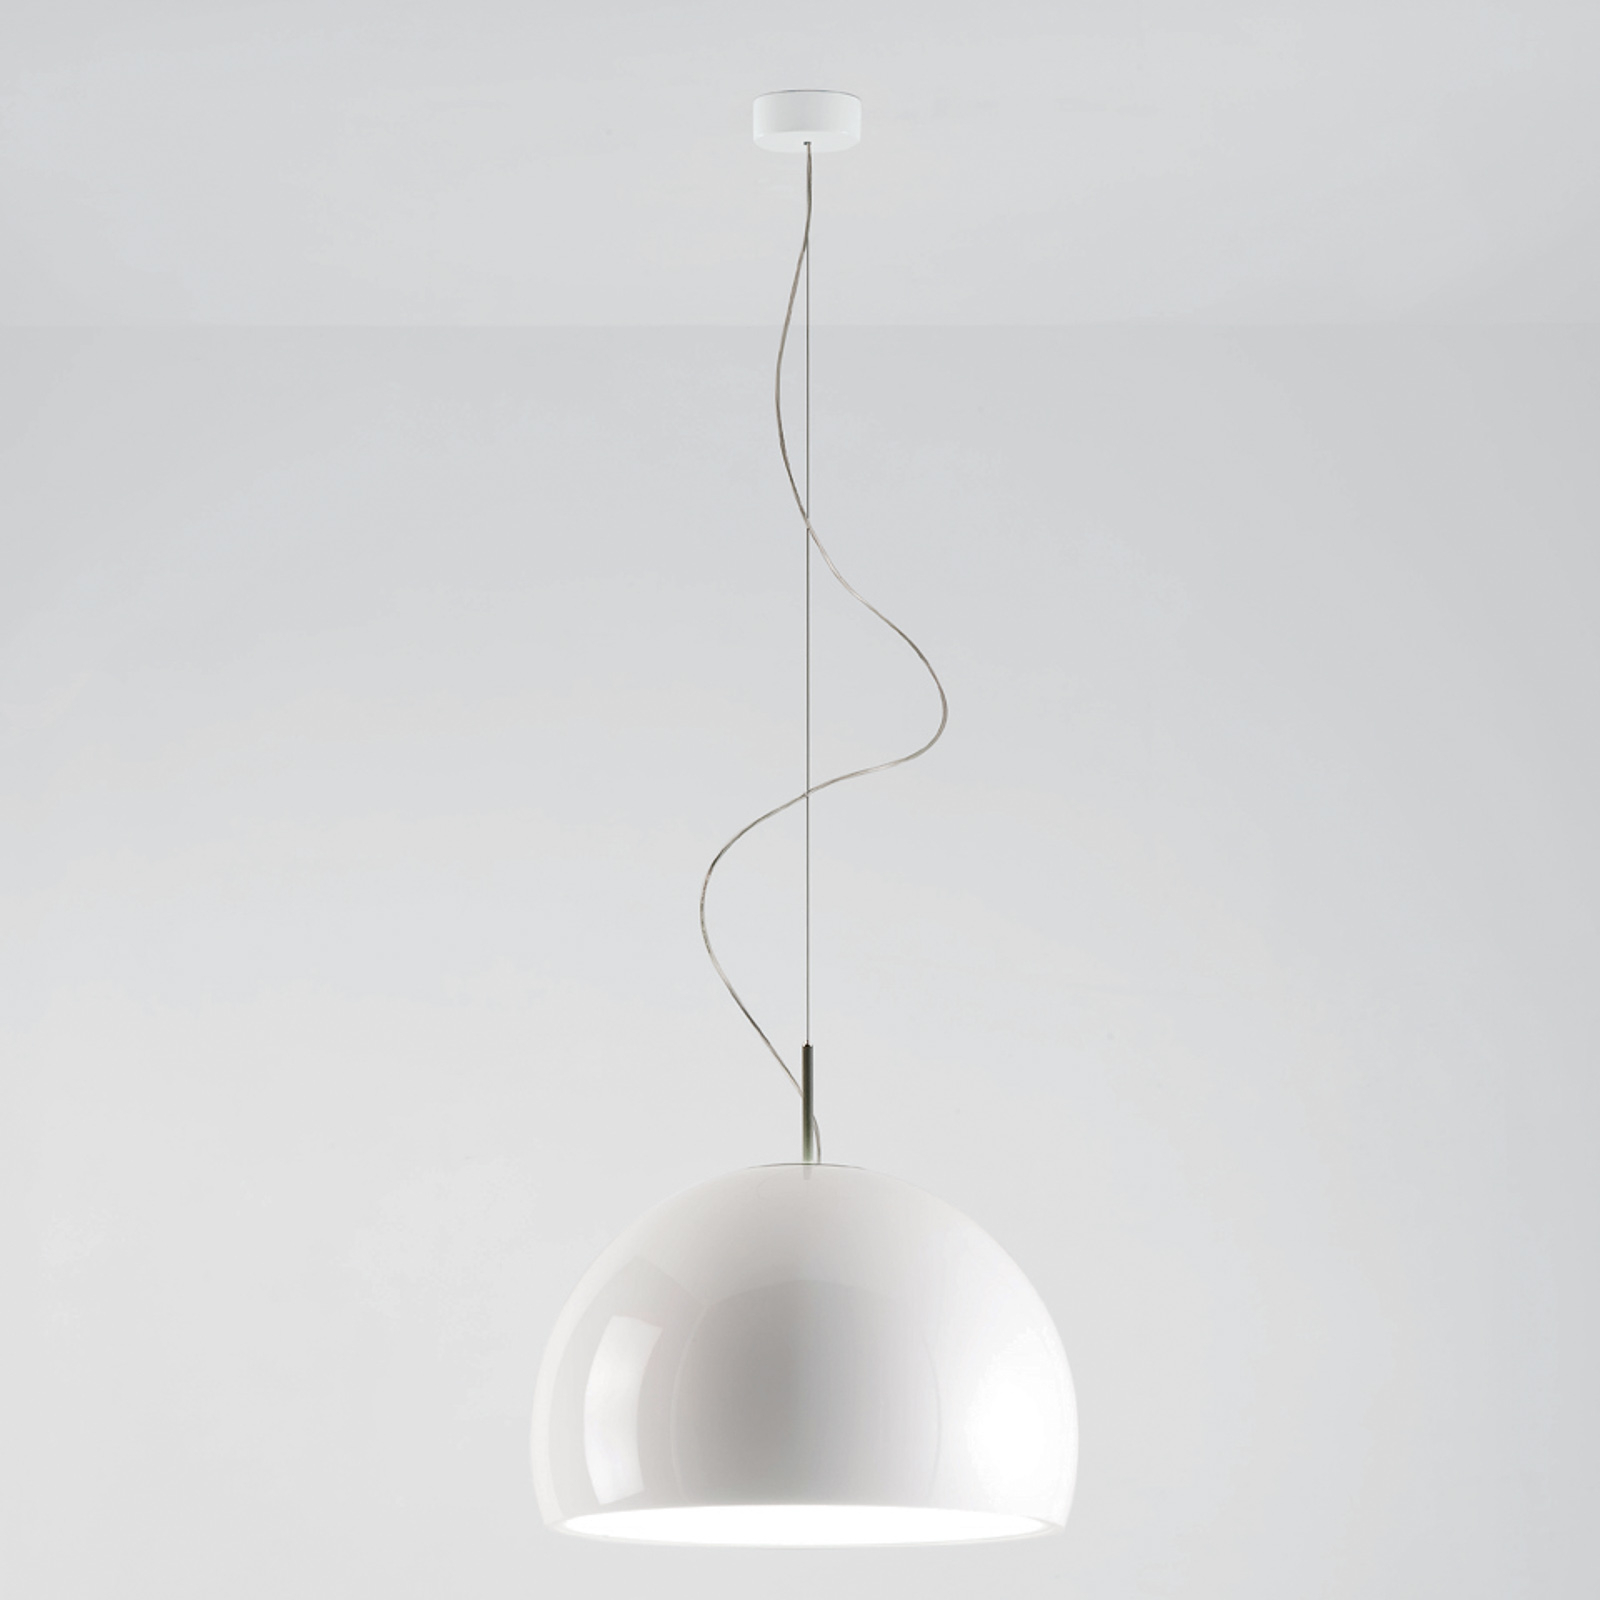 Prandina Biluna S5 hanging light, glossy white